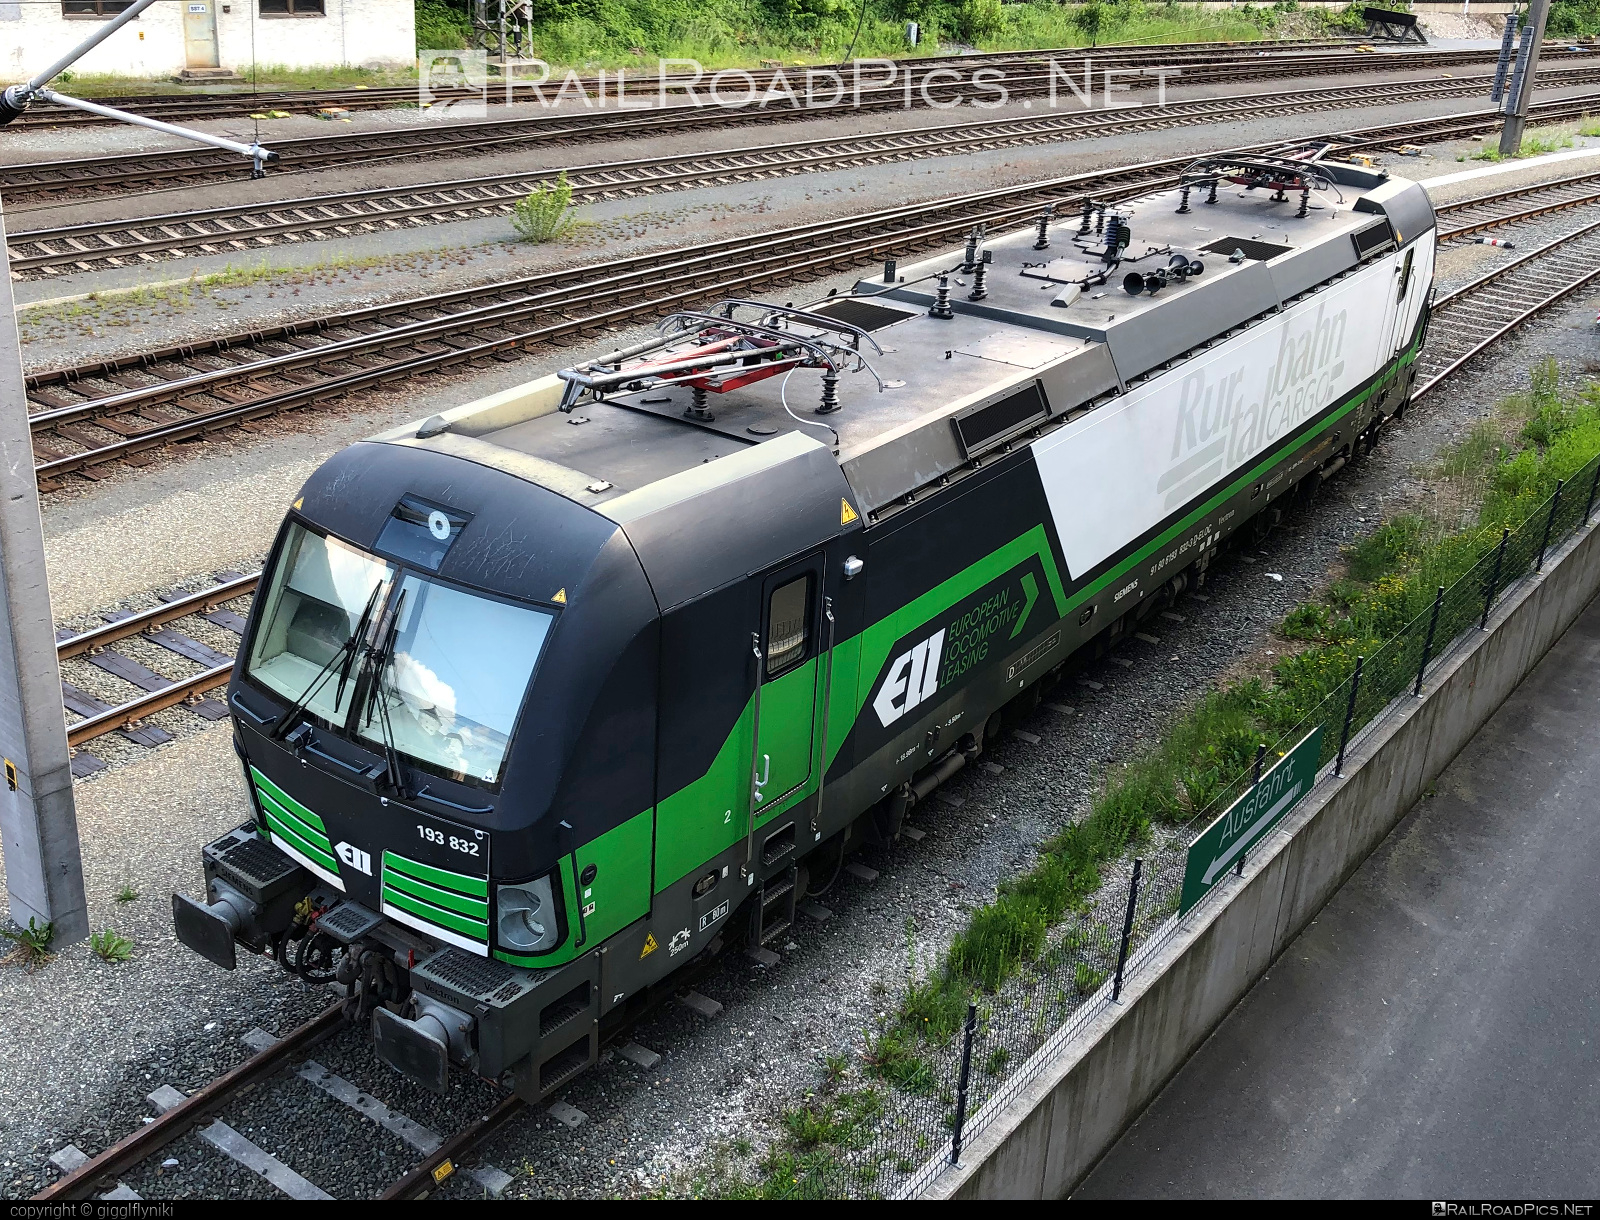 Siemens Vectron AC - 193 832 operated by Salzburger Eisenbahn Transportlogistik GmbH #SalzburgerEisenbahnTransportlogistik #SalzburgerEisenbahnTransportlogistikGmbH #ell #ellgermany #eloc #europeanlocomotiveleasing #setg #siemens #siemensVectron #siemensVectronAC #vectron #vectronAC